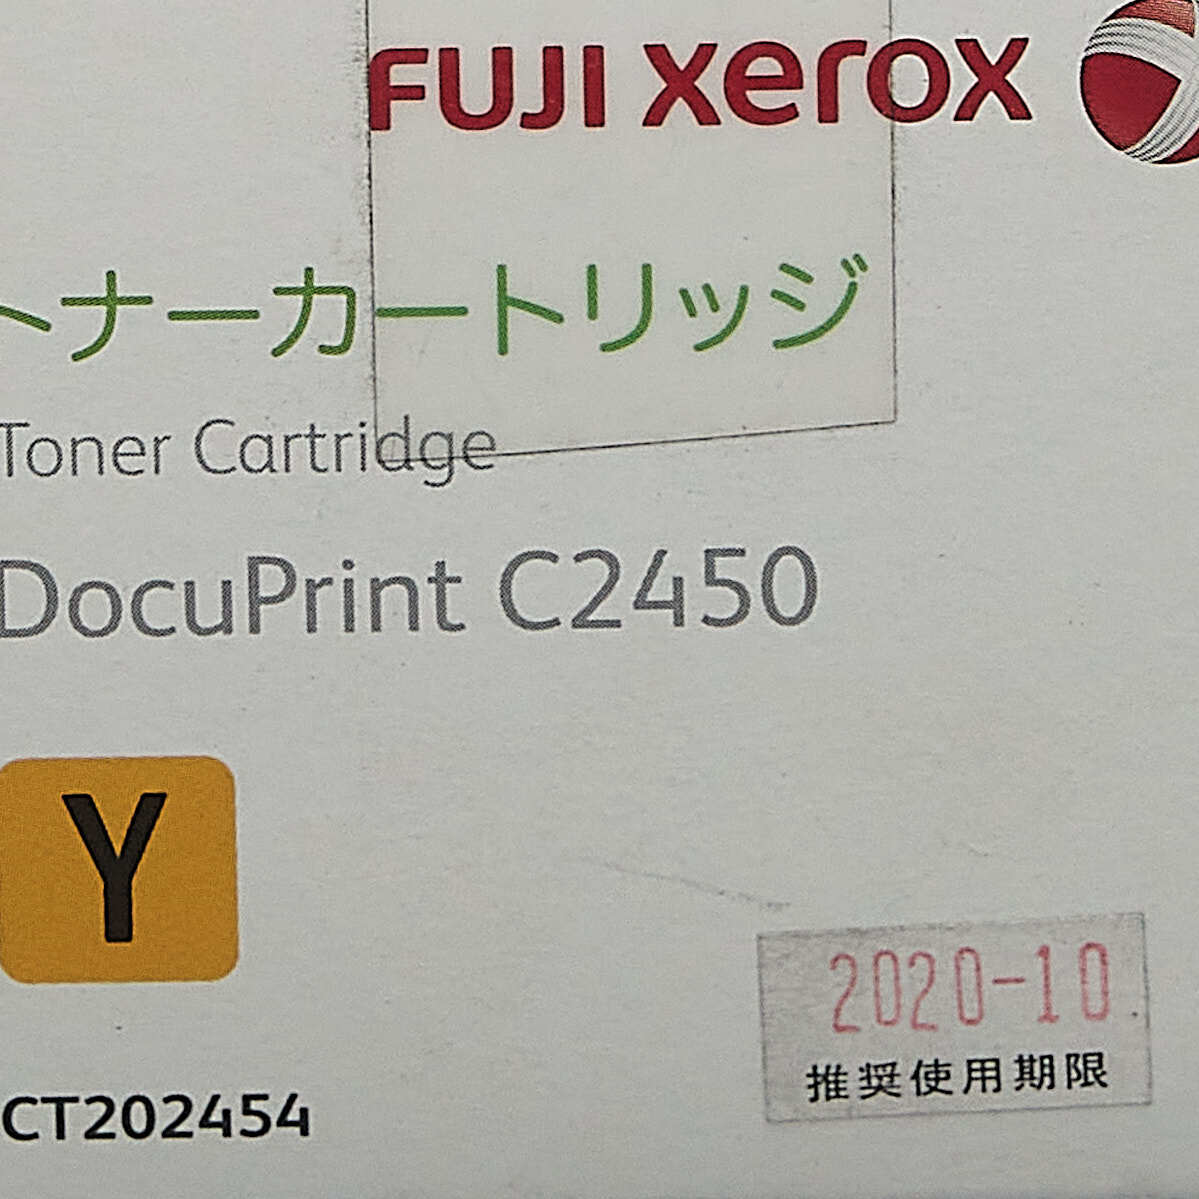 送料無料!! FUJI XEROX CT202454 イエロー トナーカートリッジ 純正 適合機種 DocuPrint C2450_画像5